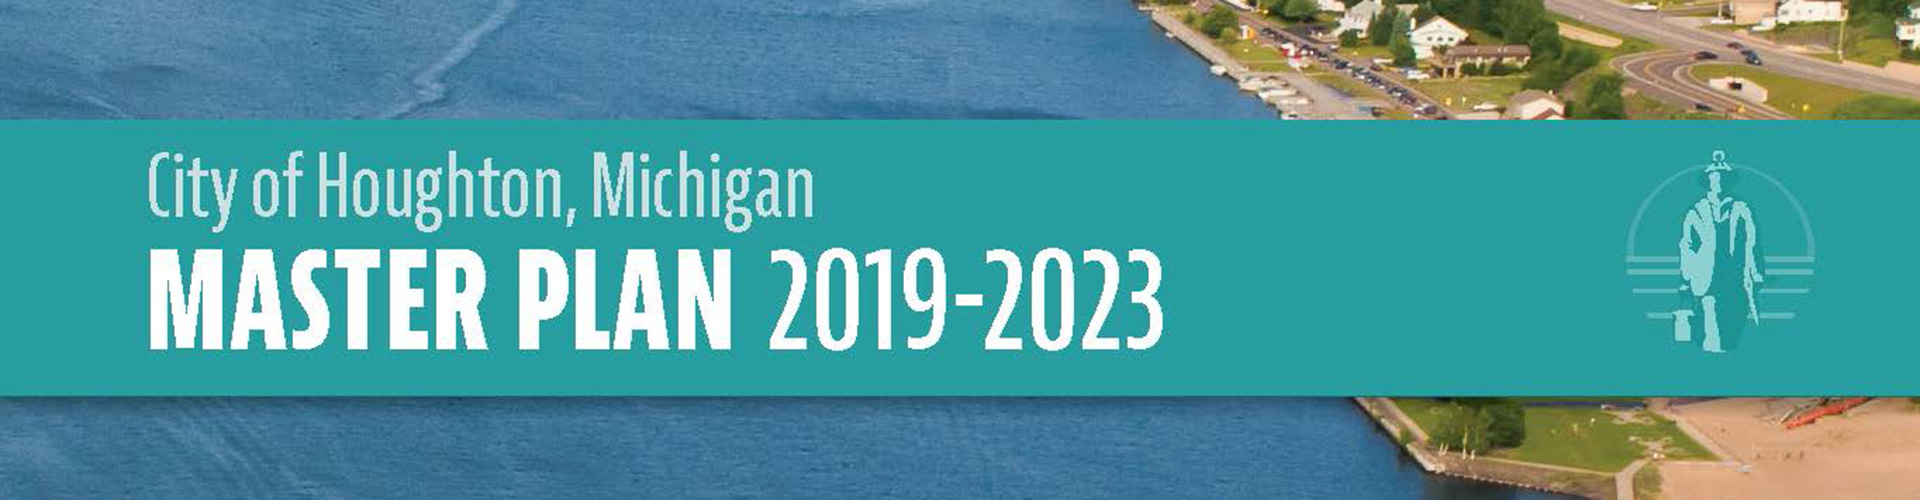 City of Houghton, Michigan Master Plan